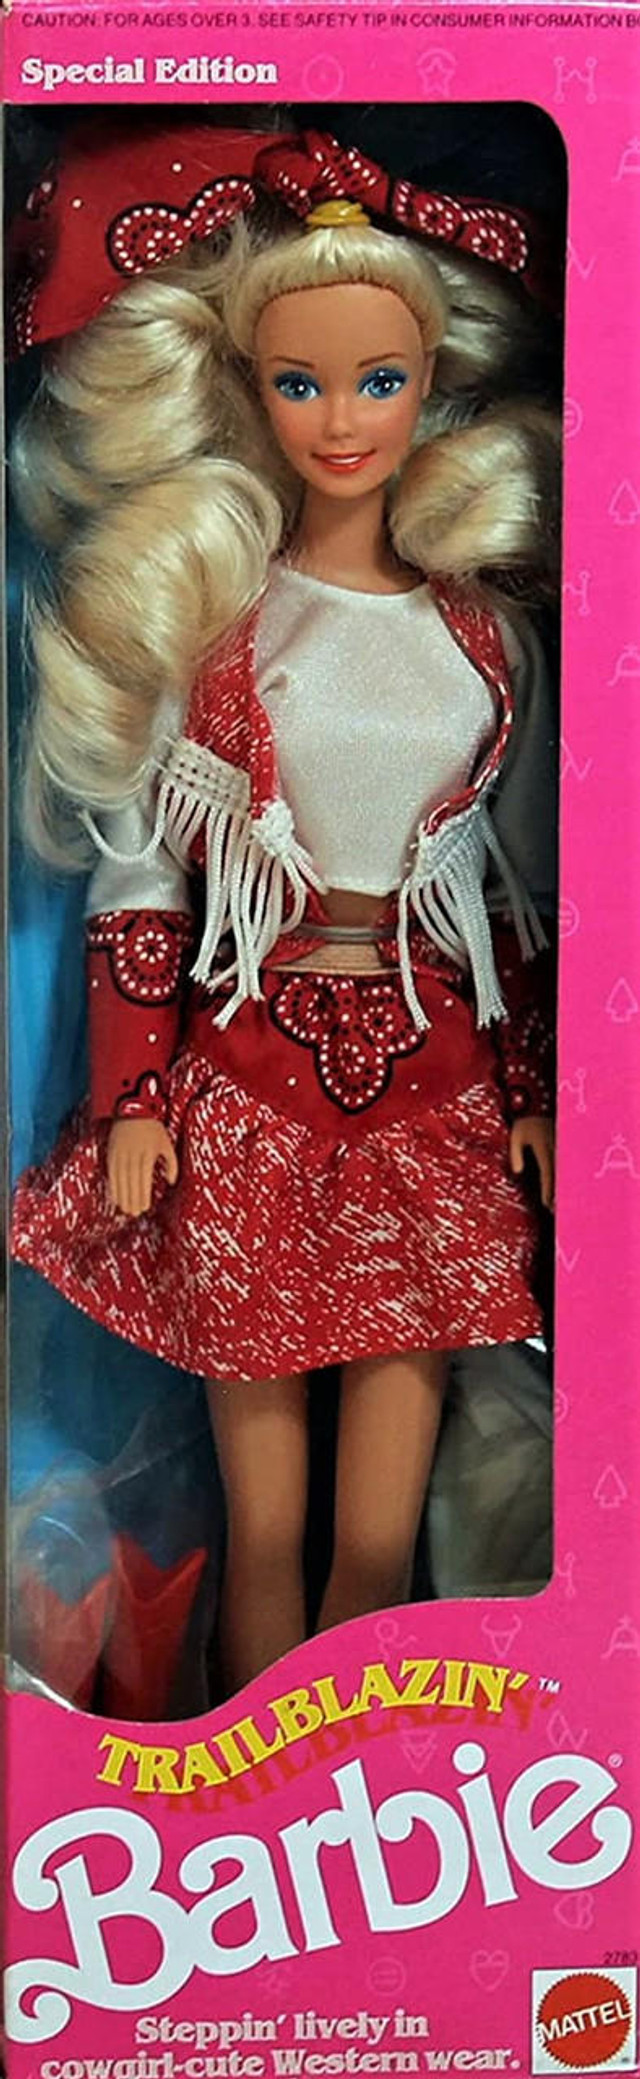 Trail Blazin' Barbie Doll Special Edition 1991 Mattel 2783 - We-R-Toys